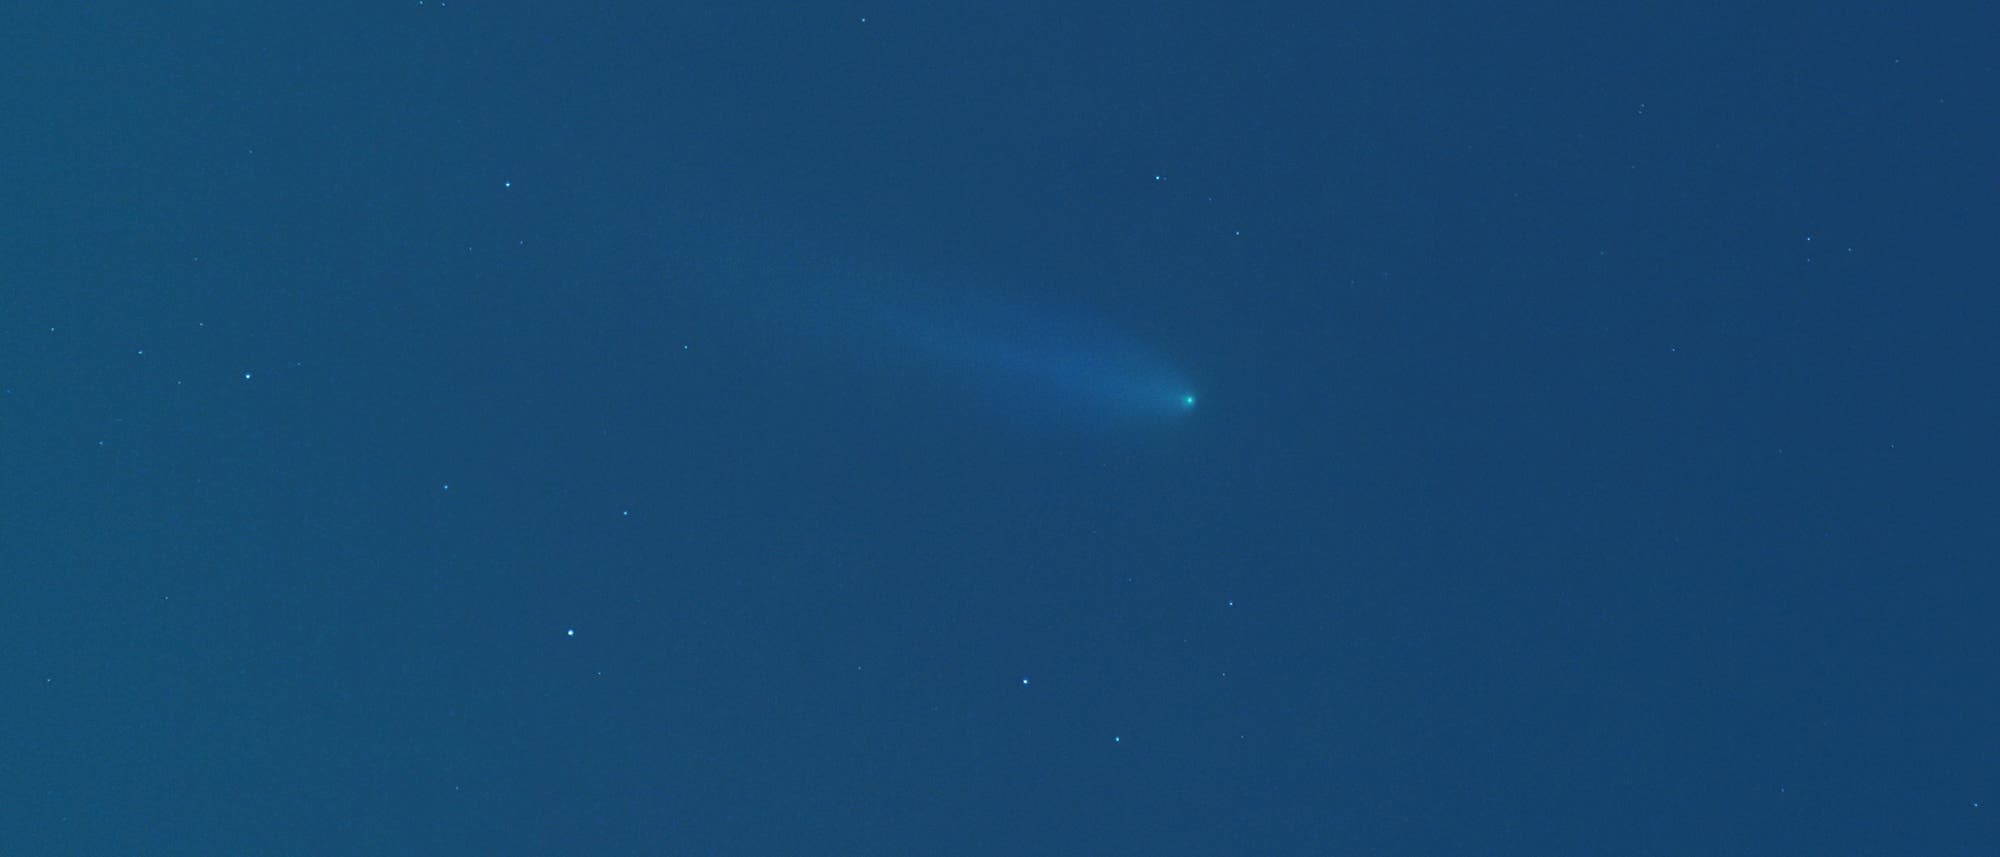 Komet Pons-Brooks während der Sonnenfinsternis